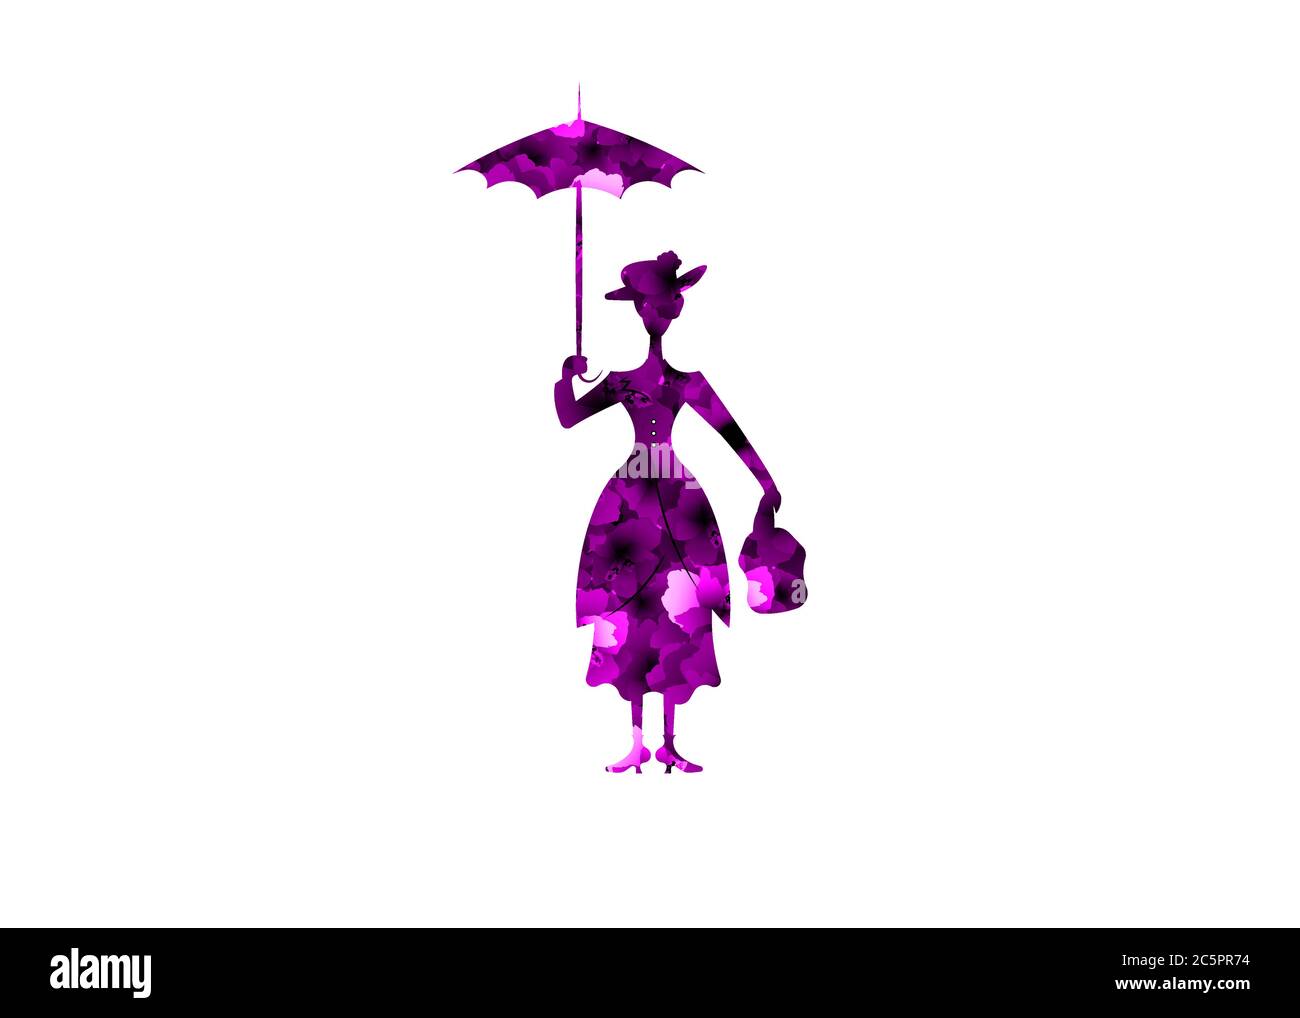 Silhouette Mädchen schwimmt mit Regenschirm in der Hand, lila Blumen Silhouette, Mary Poppins Stil, Vektor isoliert oder weißen Hintergrund Stock Vektor